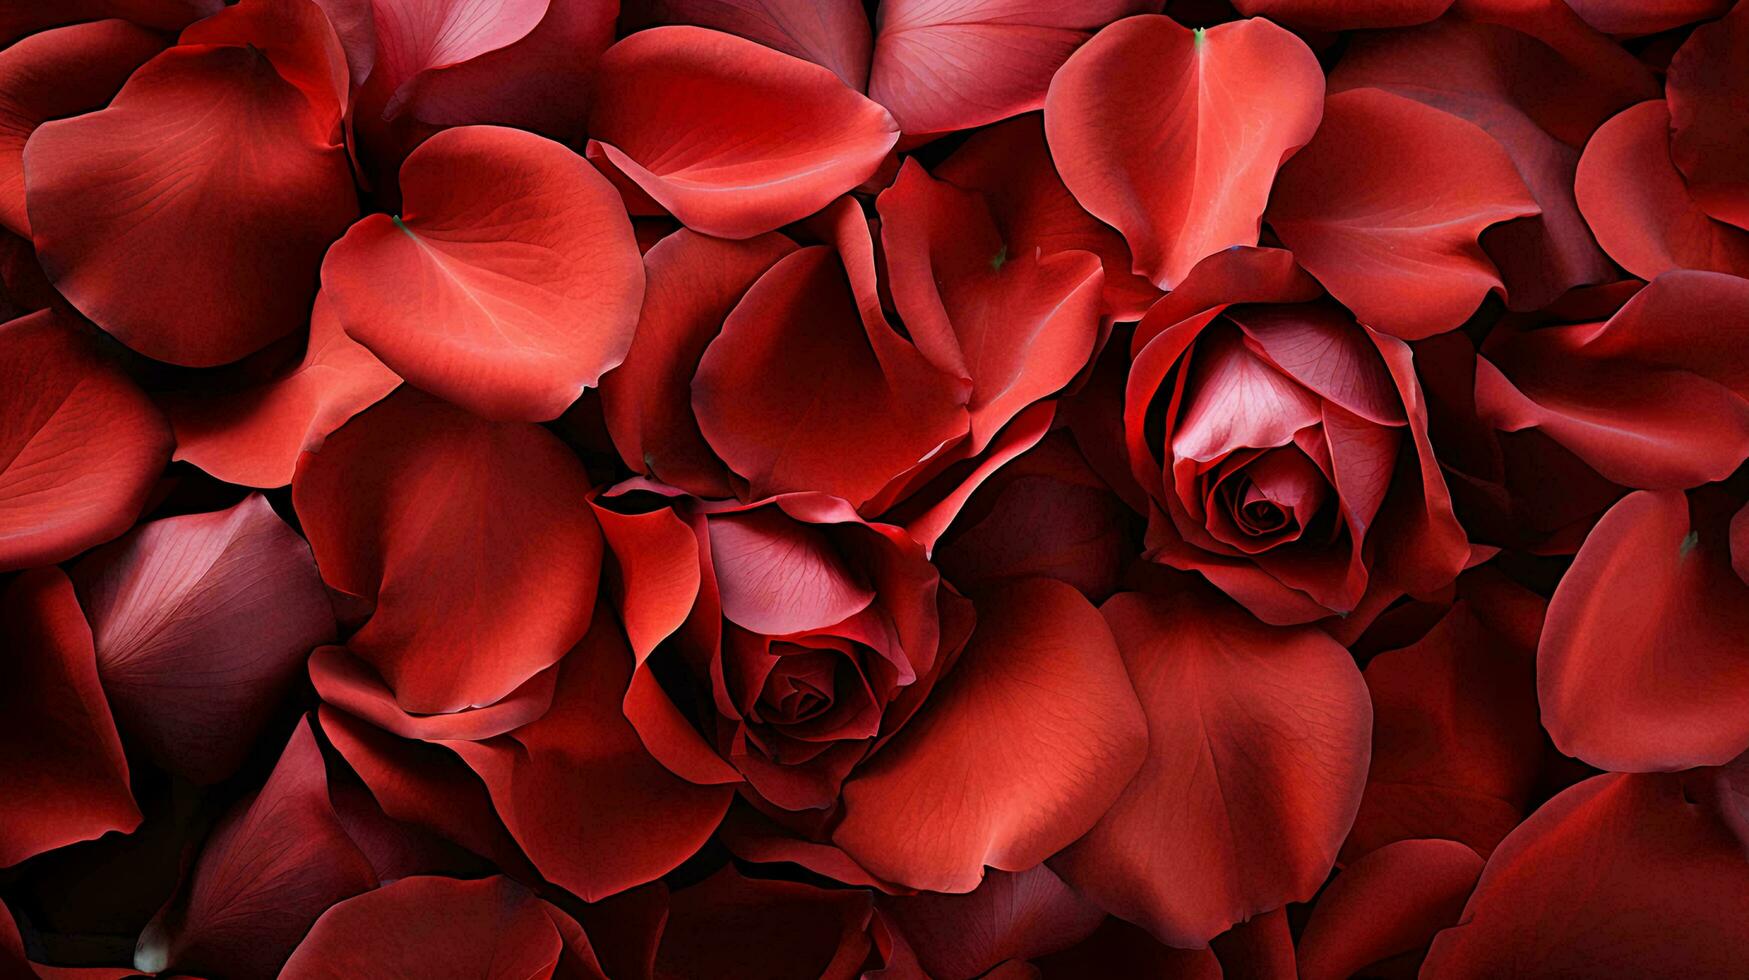 vermelho lindo apaixonado fresco rosa pétalas, amor romântico dia dos namorados dia flores textura fundo foto